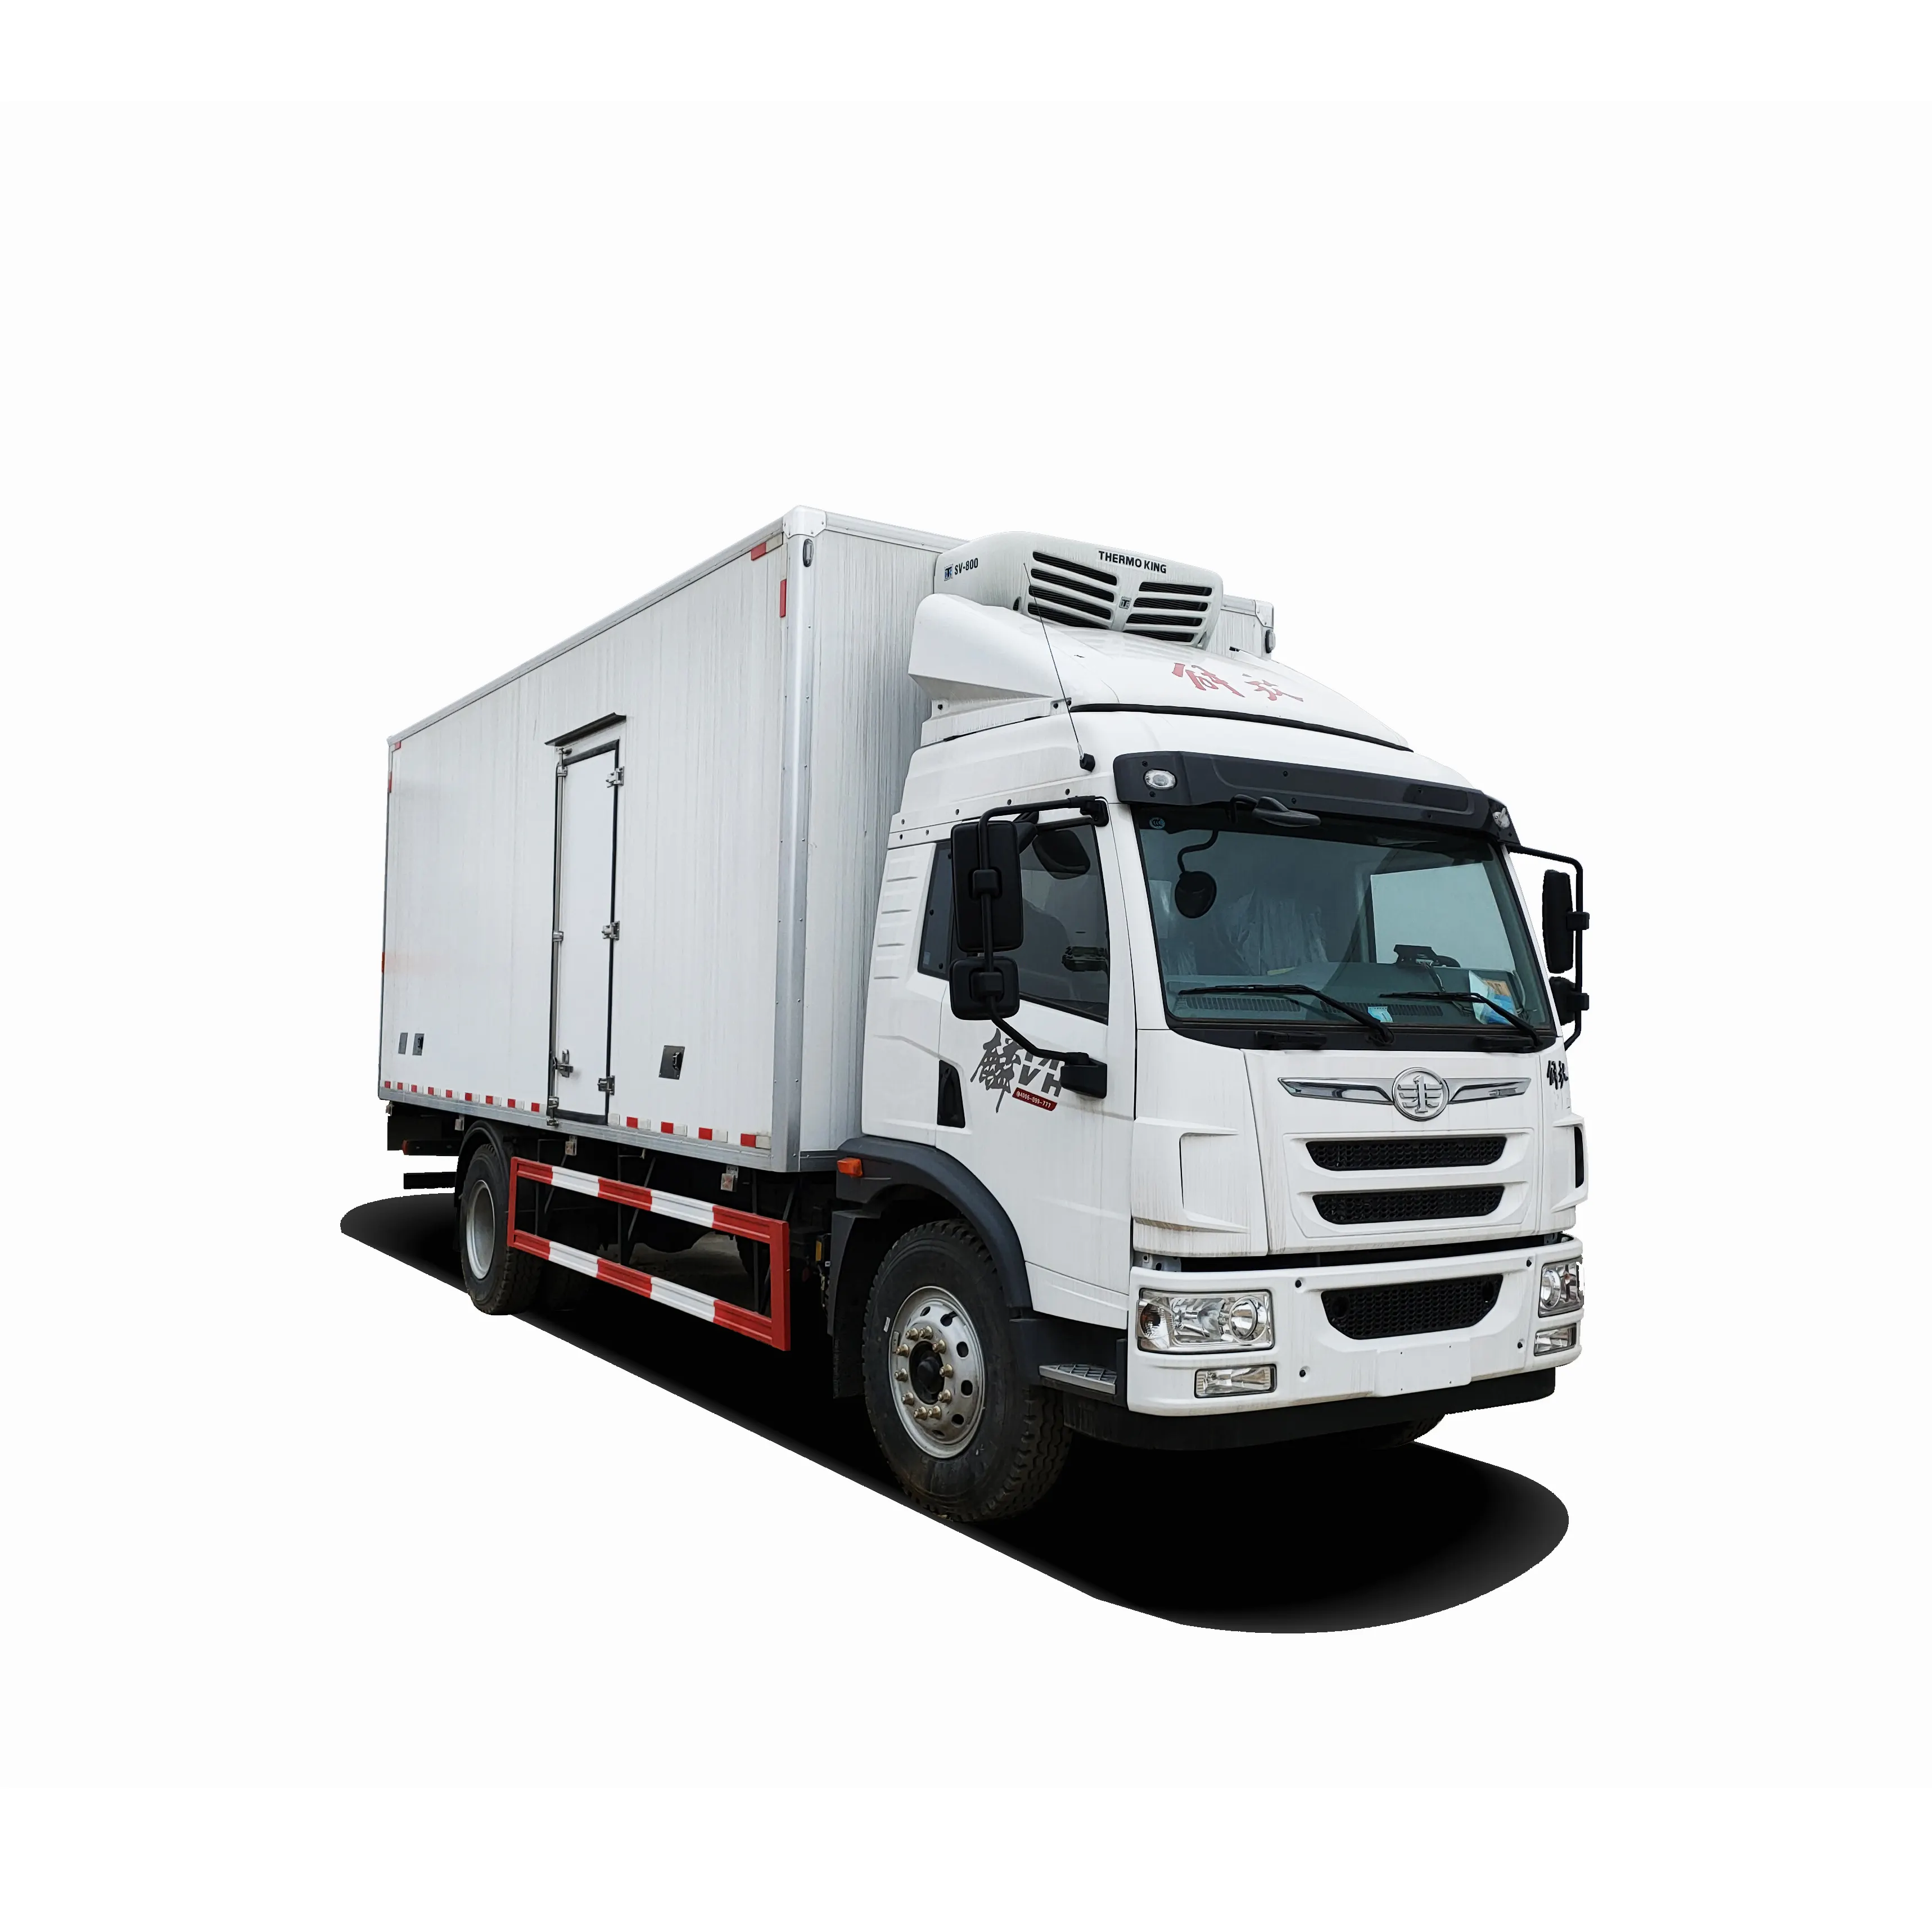 Fabricante de experiência faw 4x2 6.8m 10 toneladas, transporte de alimentos, caminhão, refrigerador, caminhão, entrega